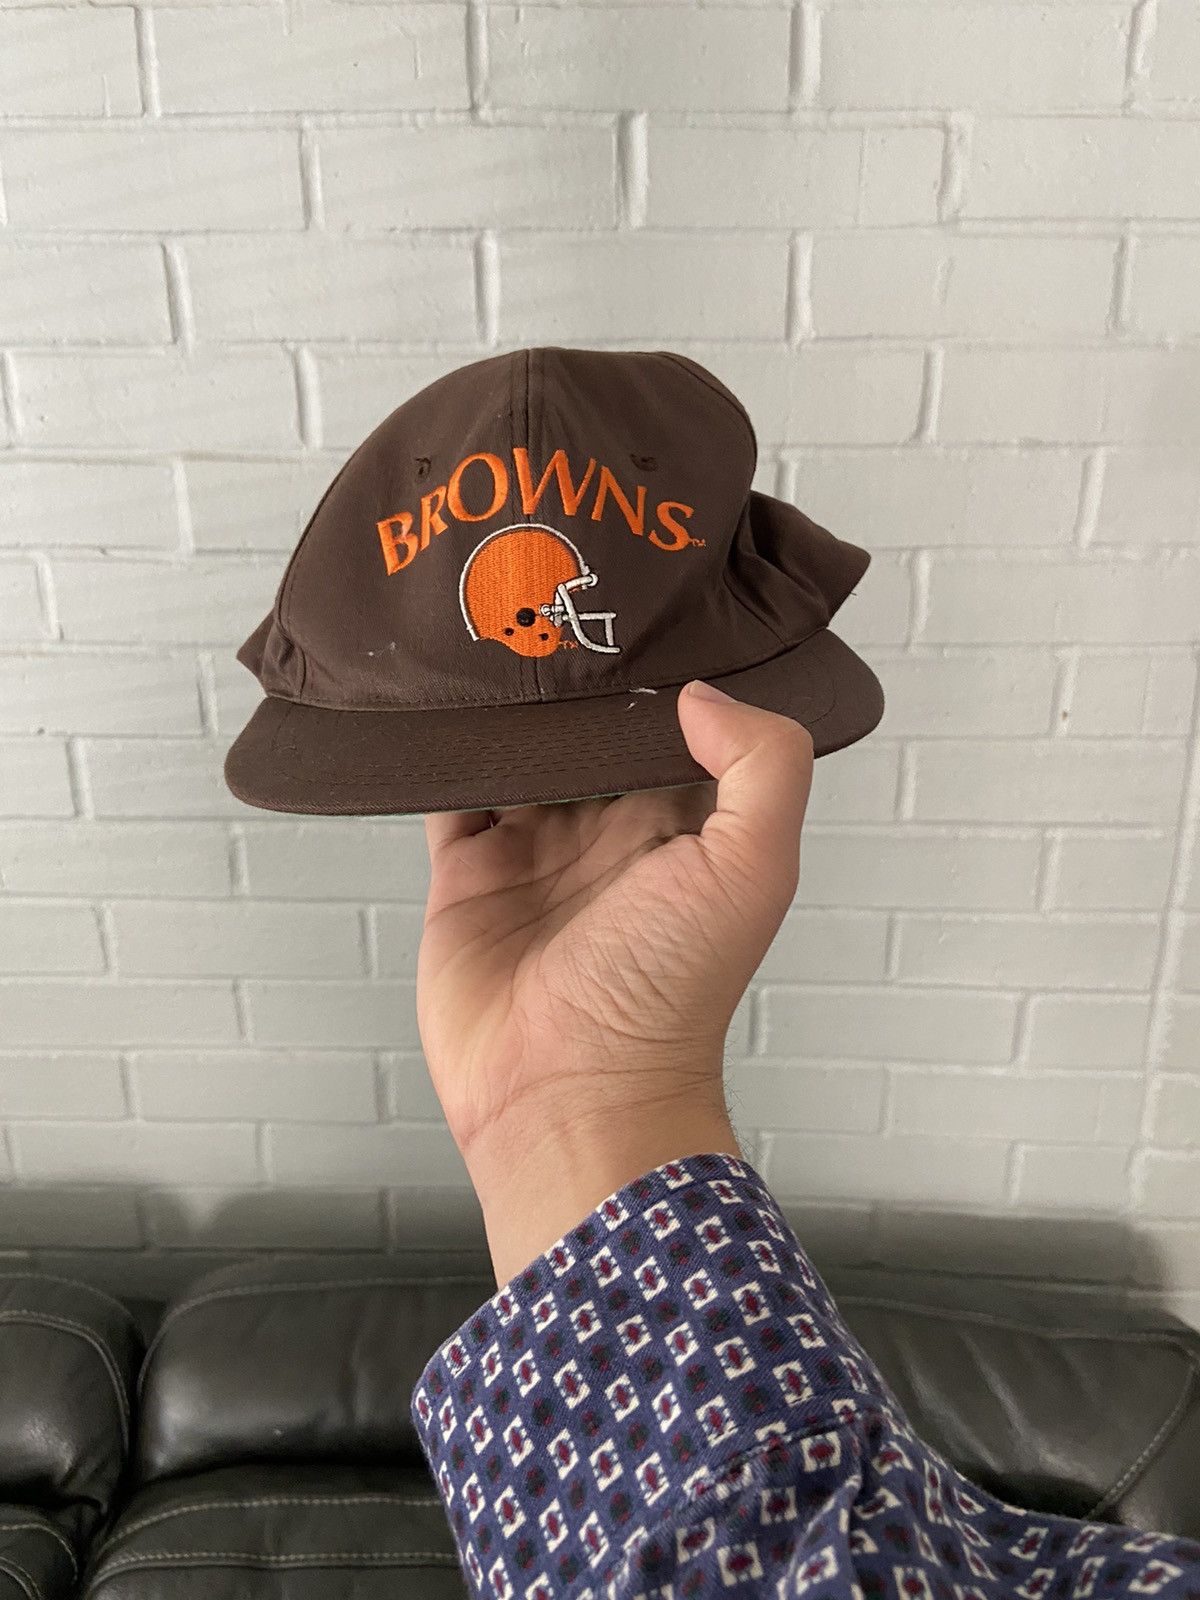 NEW! Vintage Team NFL Cleveland Browns Hat Adjustable Snap Back